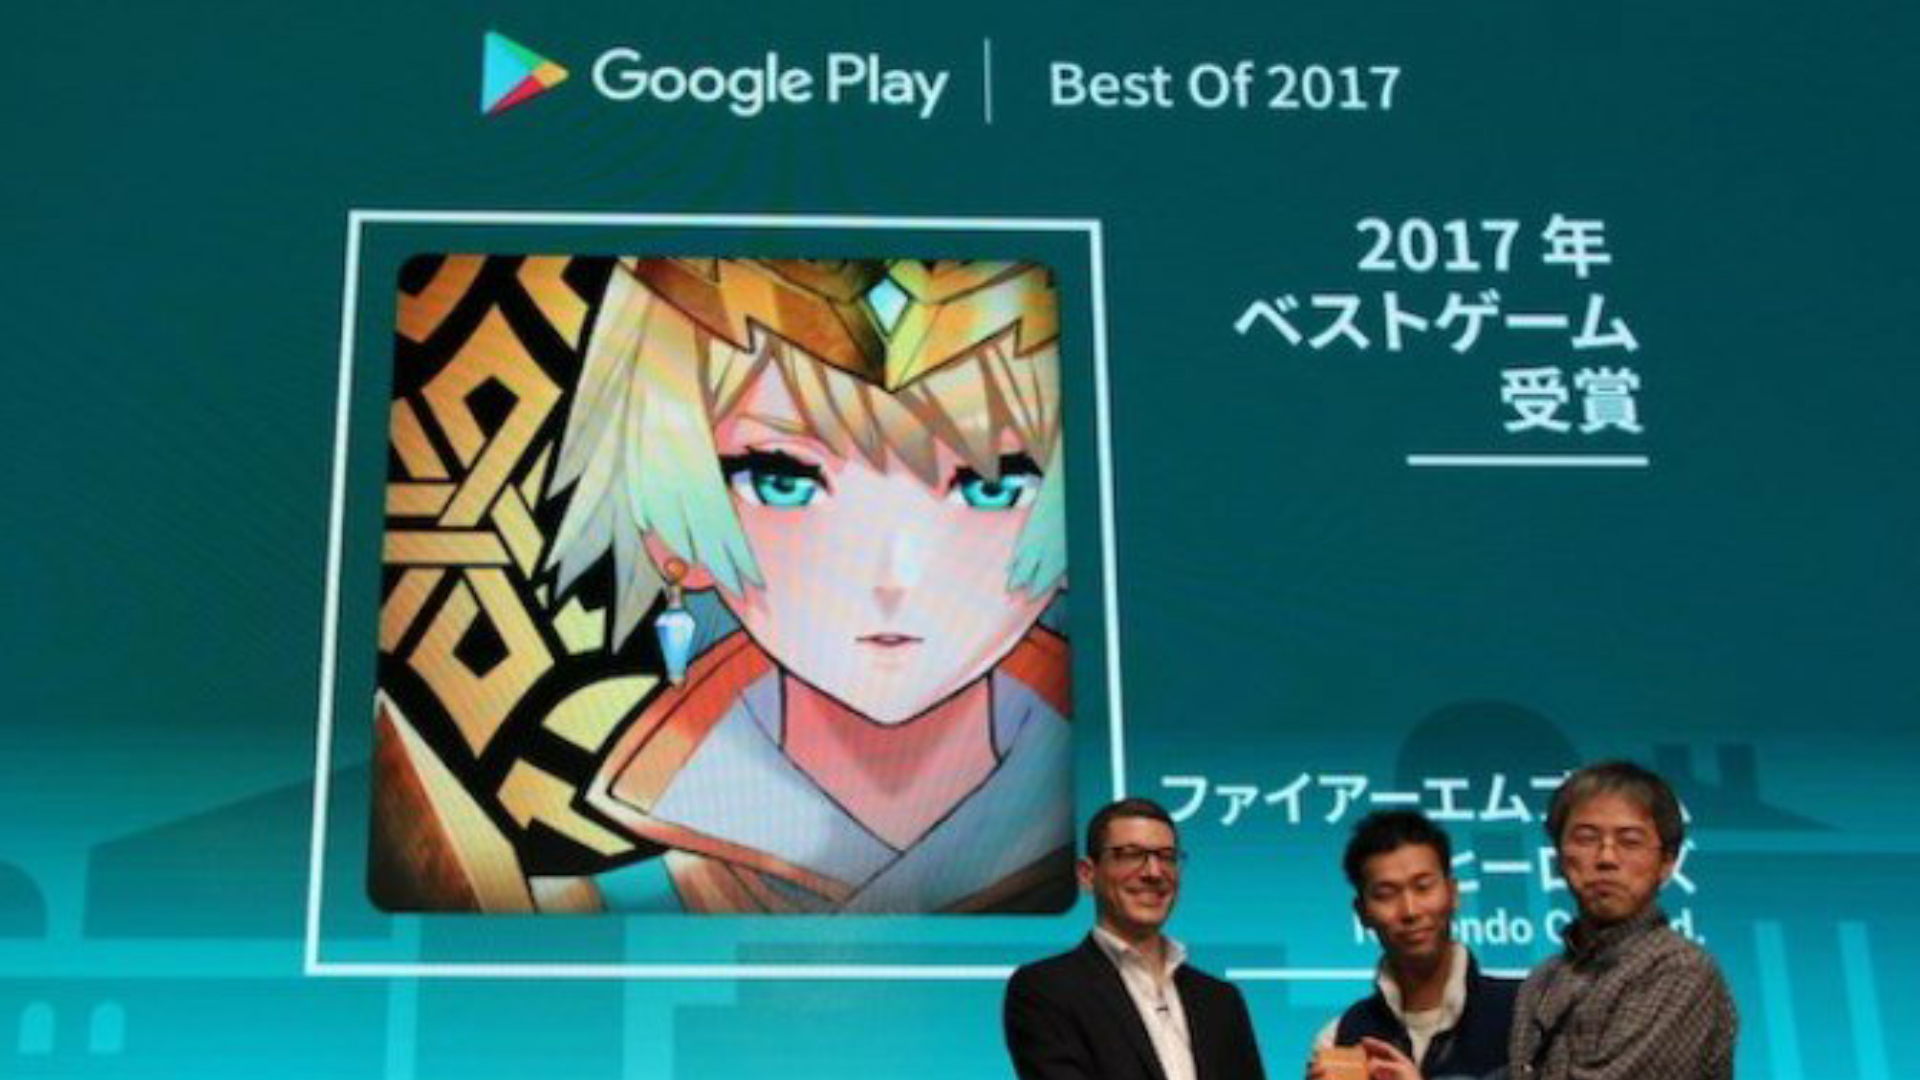 Fire Emblem Heroes gana el premio al mejor juego de 2017 en los Google Play Awards de Japón